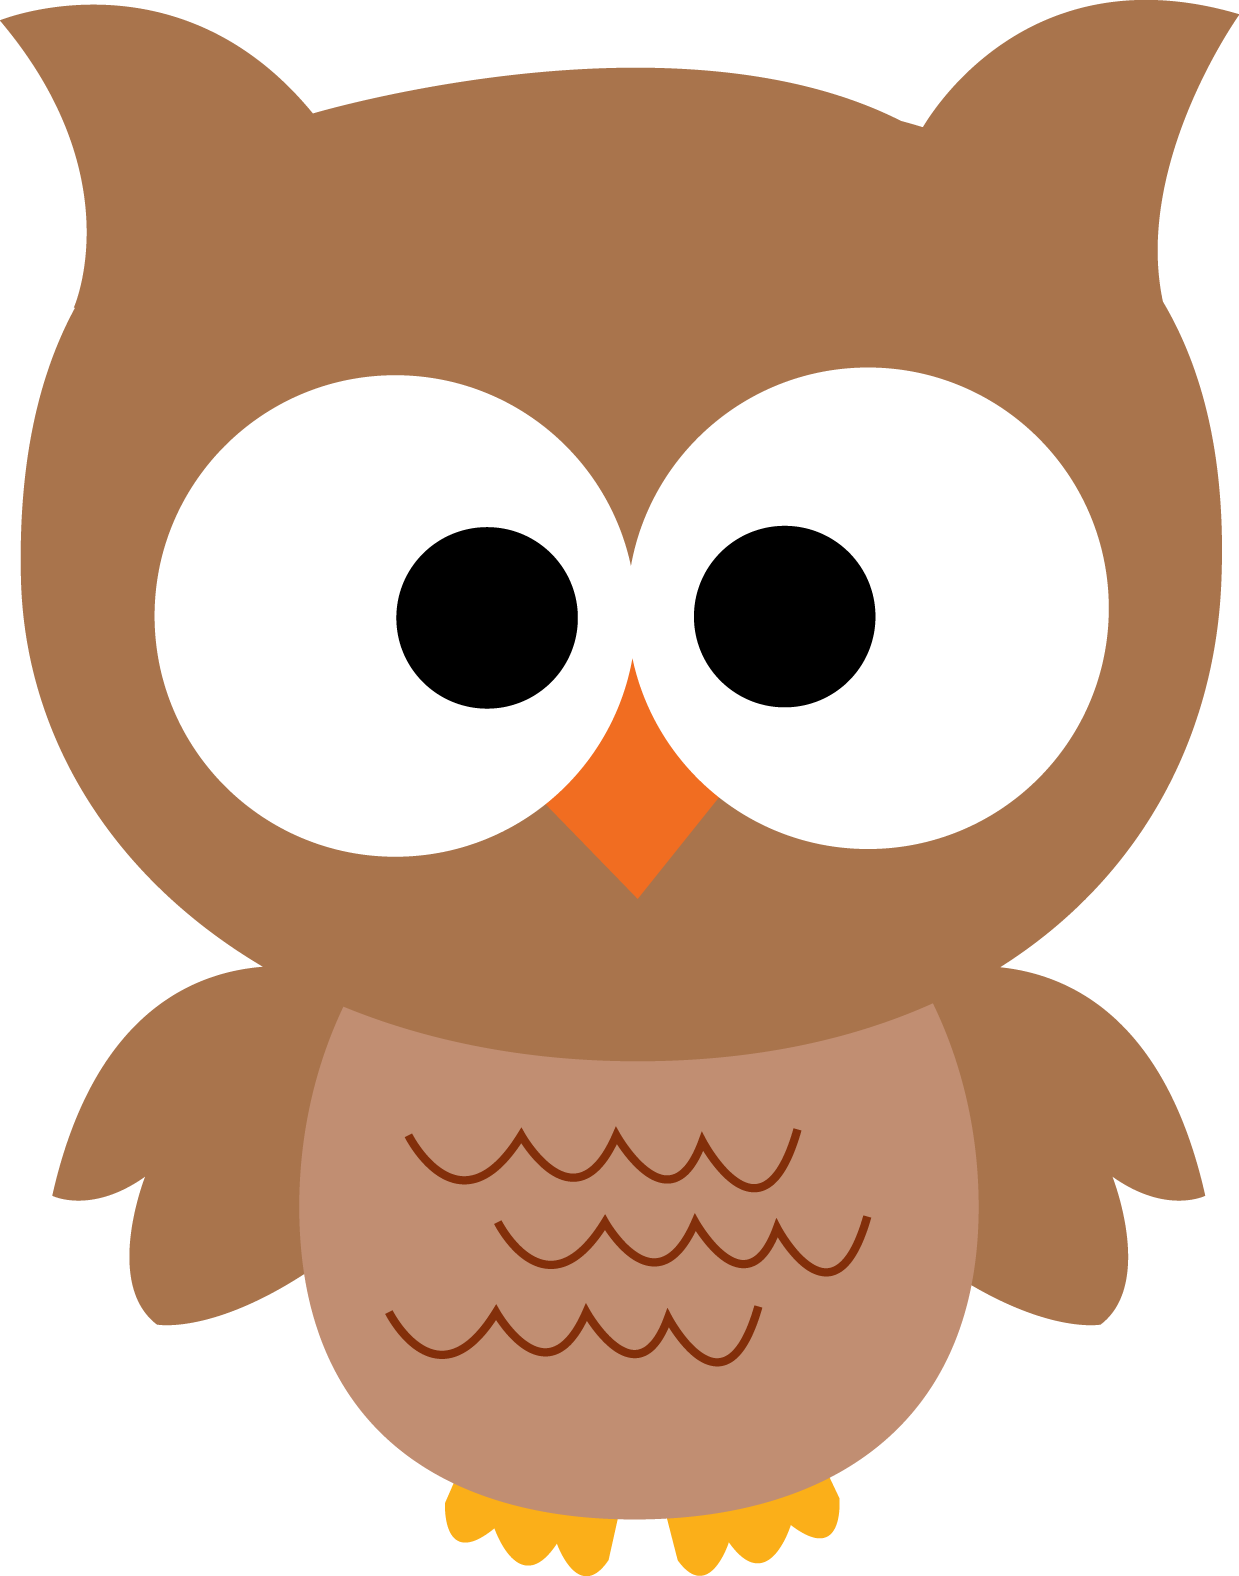 Owl Clipart Free - Tumundografico